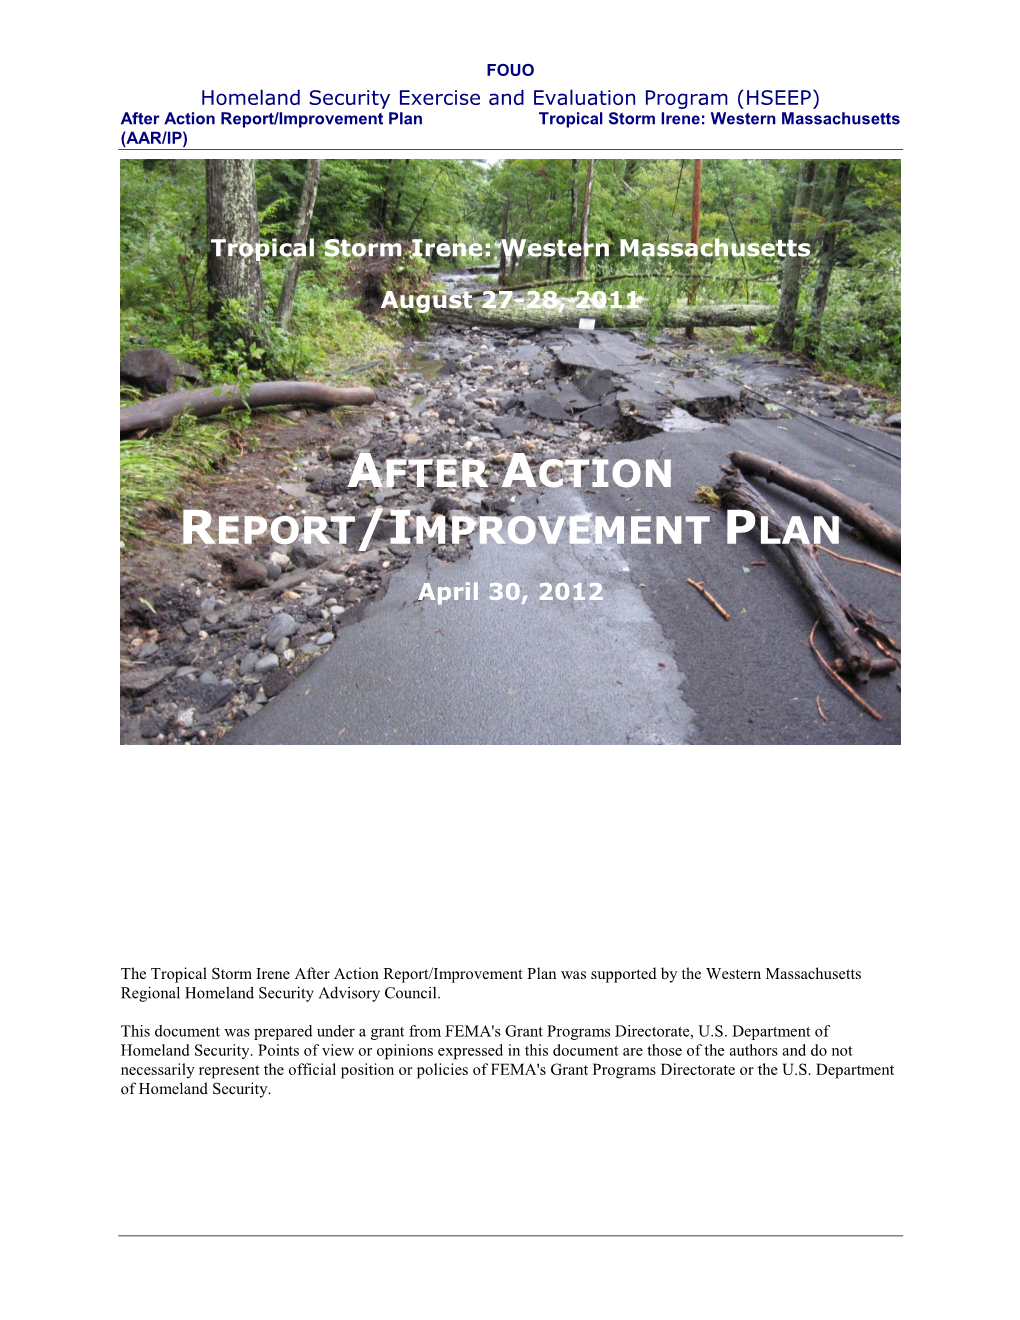 After Action Report/Improvement Plan Tropical Storm Irene: Western Massachusetts (AAR/IP)